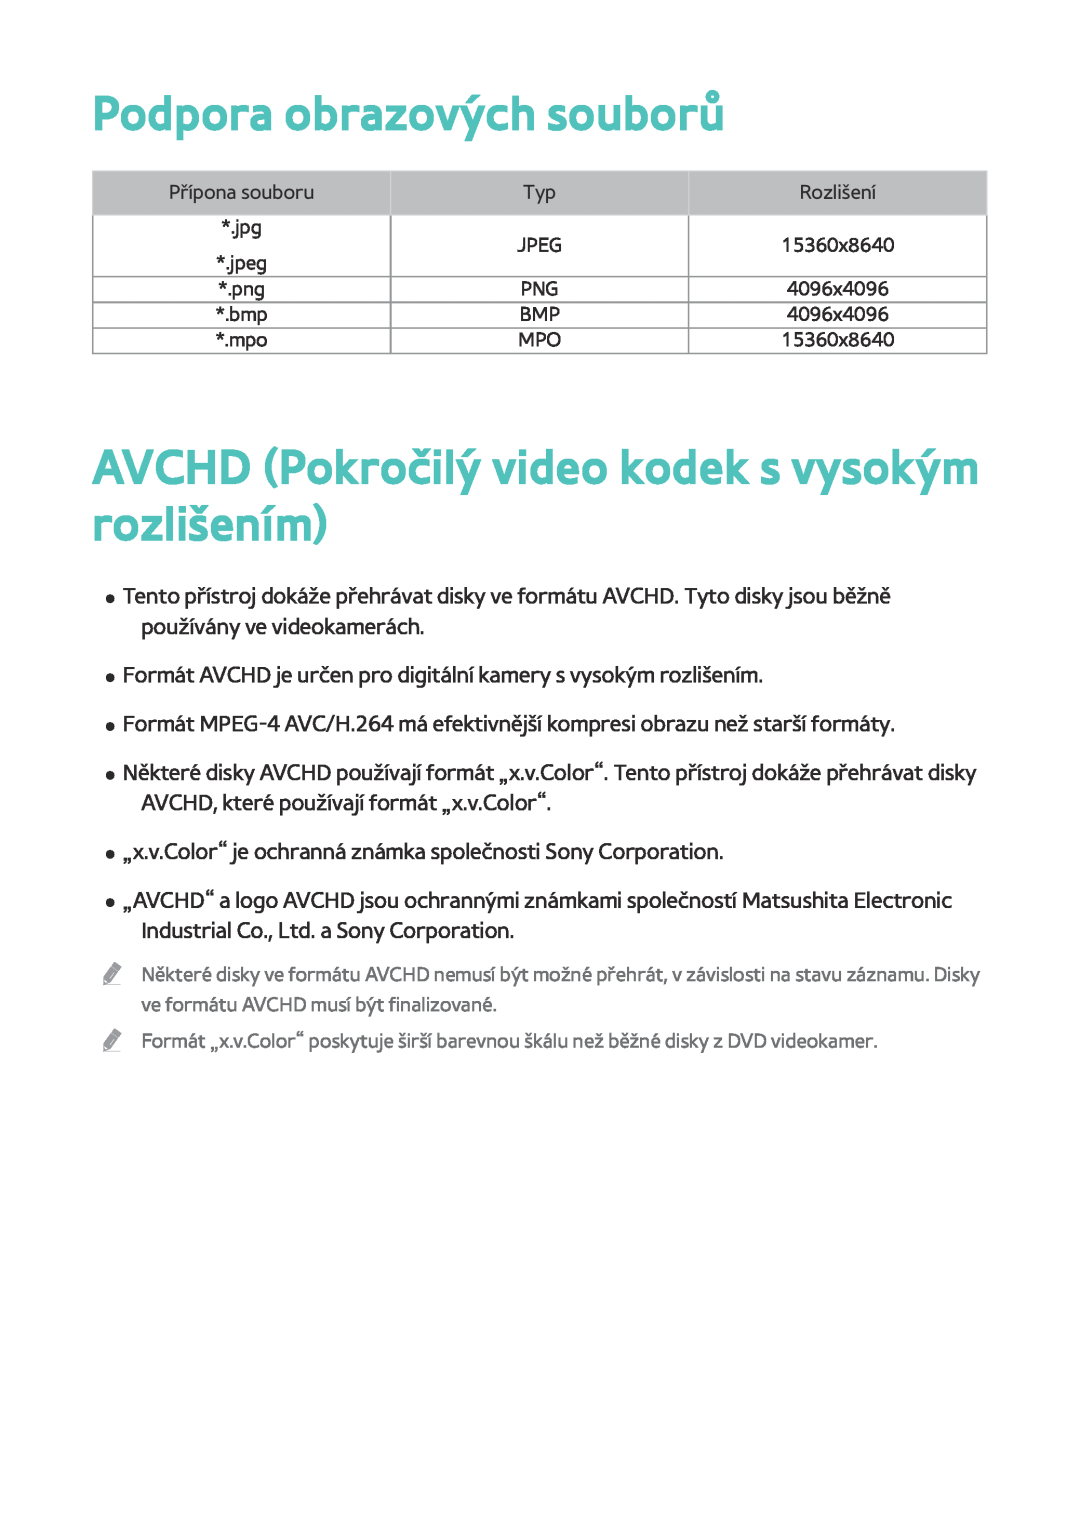 Samsung BD-F6900/EN, BD-F8900/EN, BD-F8500/EN Podpora obrazových souborů, AVCHD Pokročilý video kodek s vysokým rozlišením 